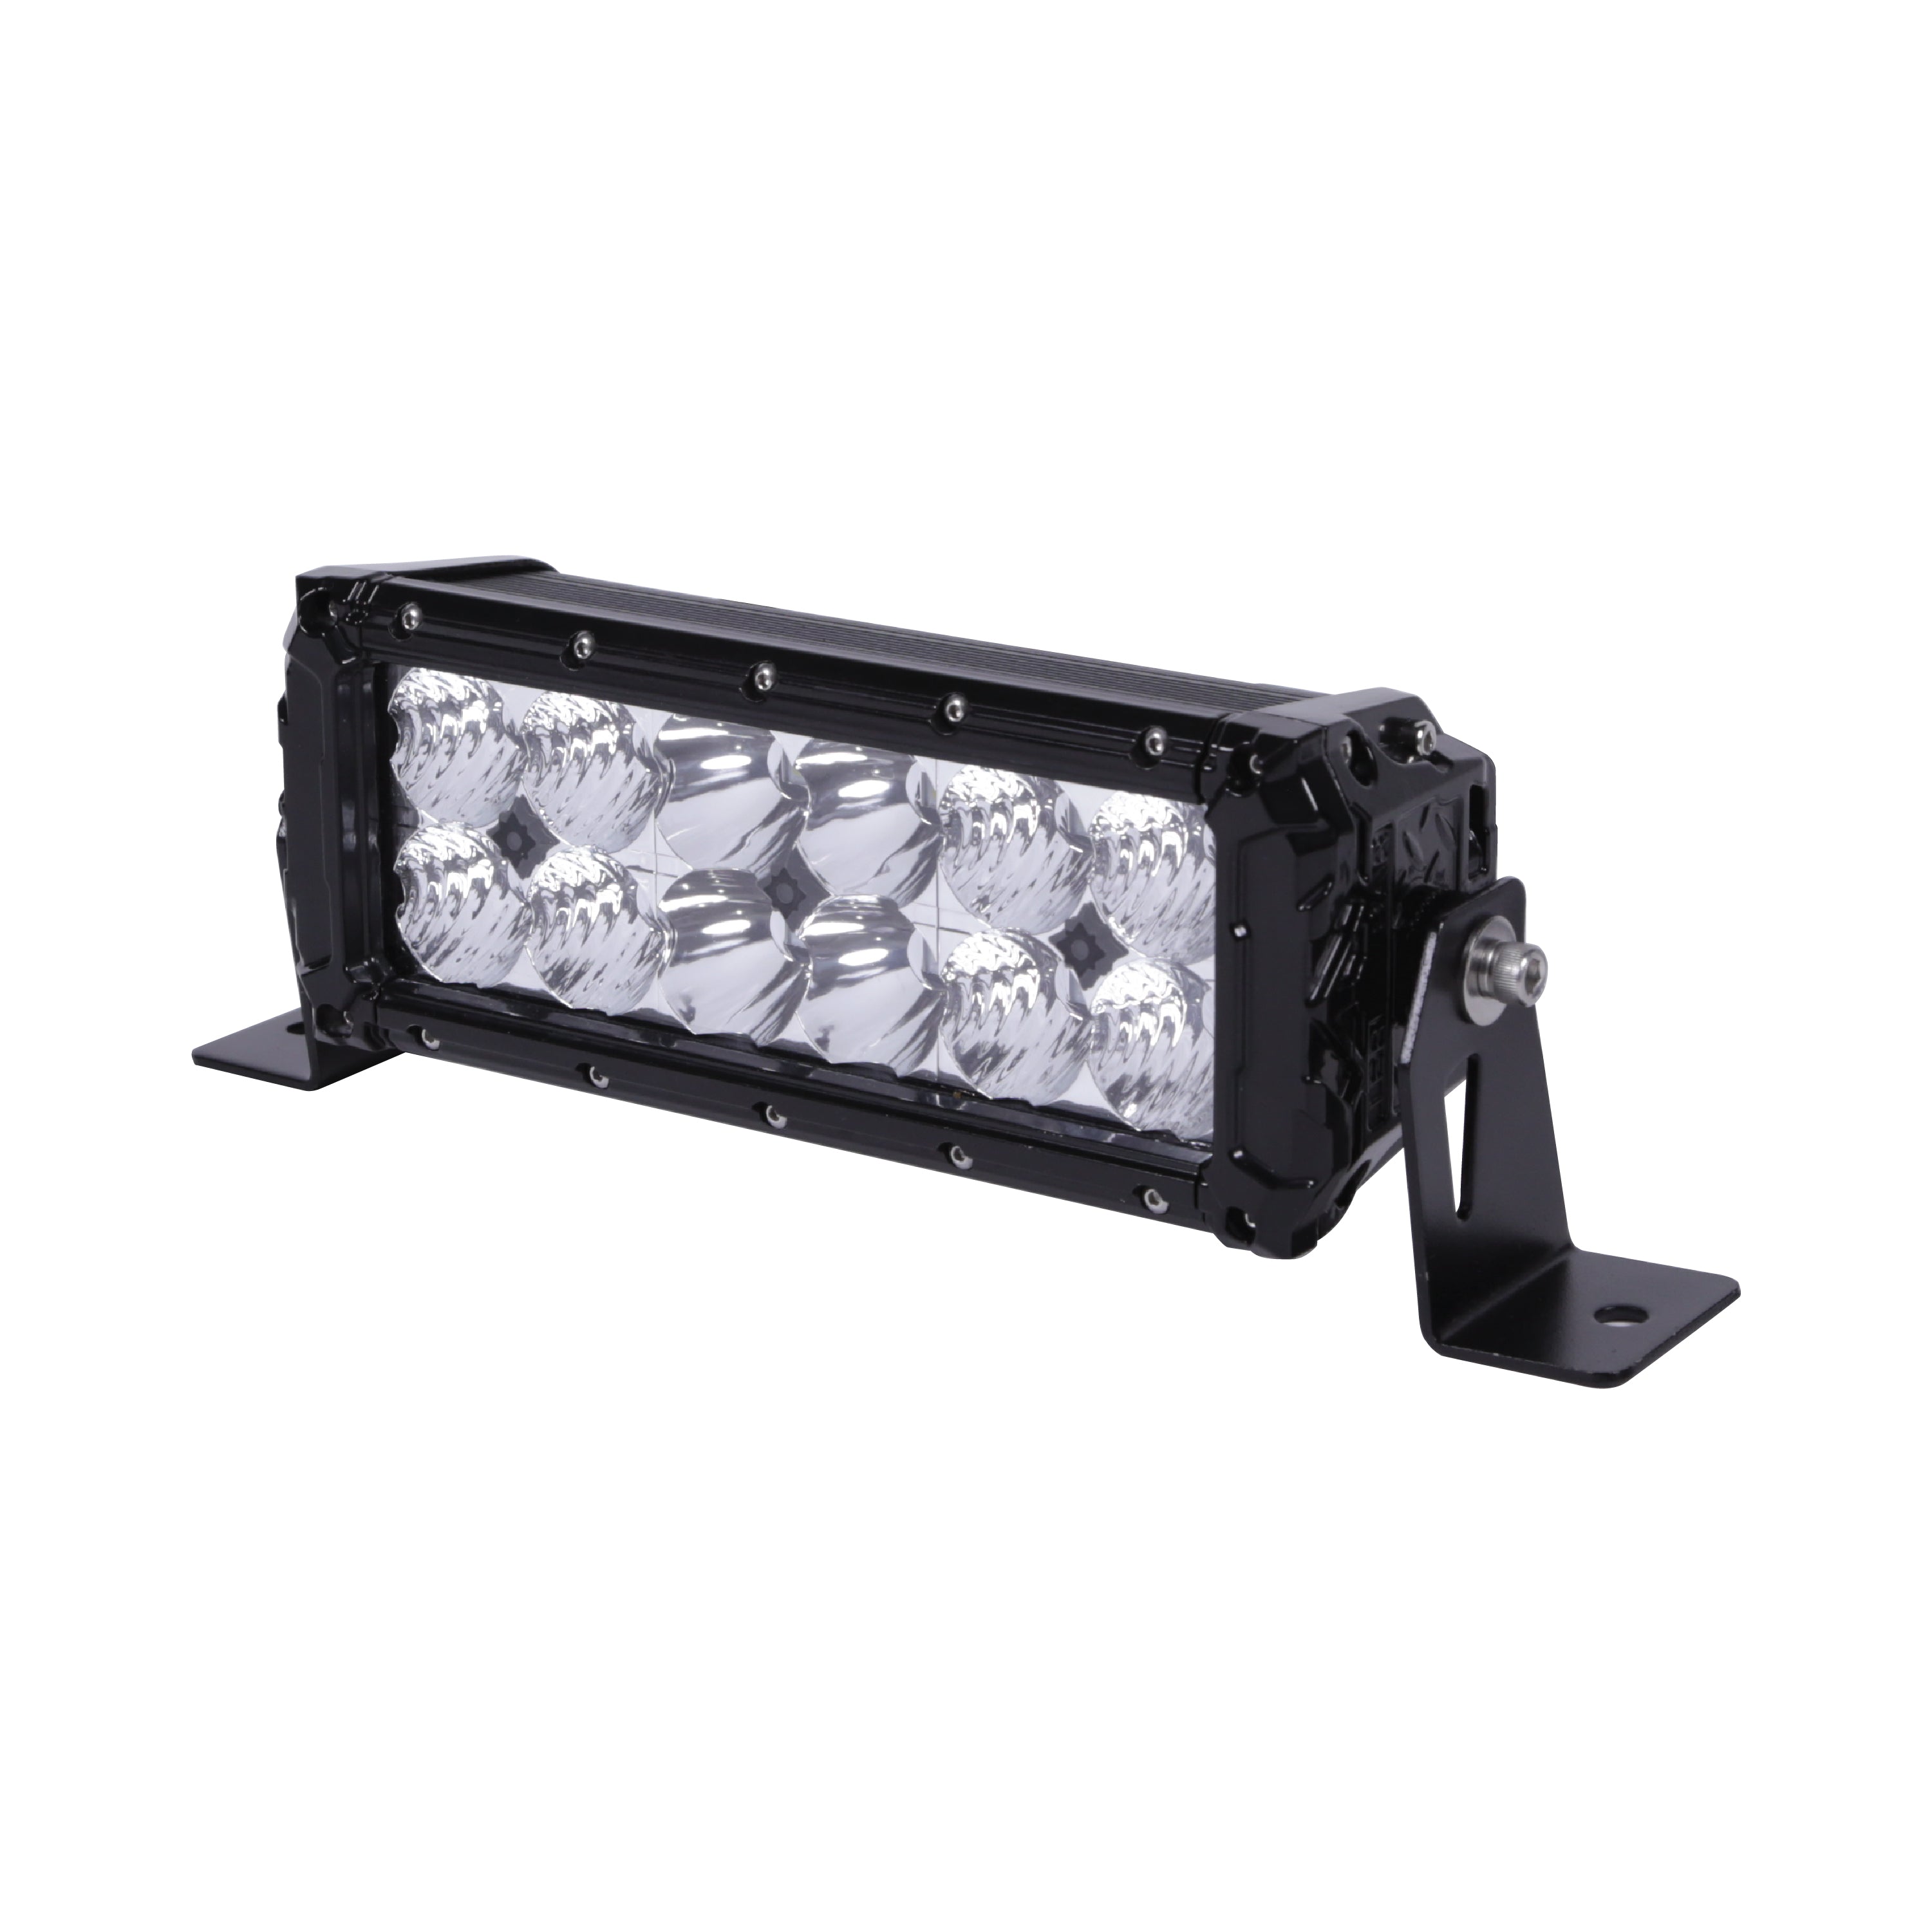 Alpena TrekTec LED Light Bar S22, 12V, Model 71067, Fit Type - Universal  for Cars, Trucks and SUVs